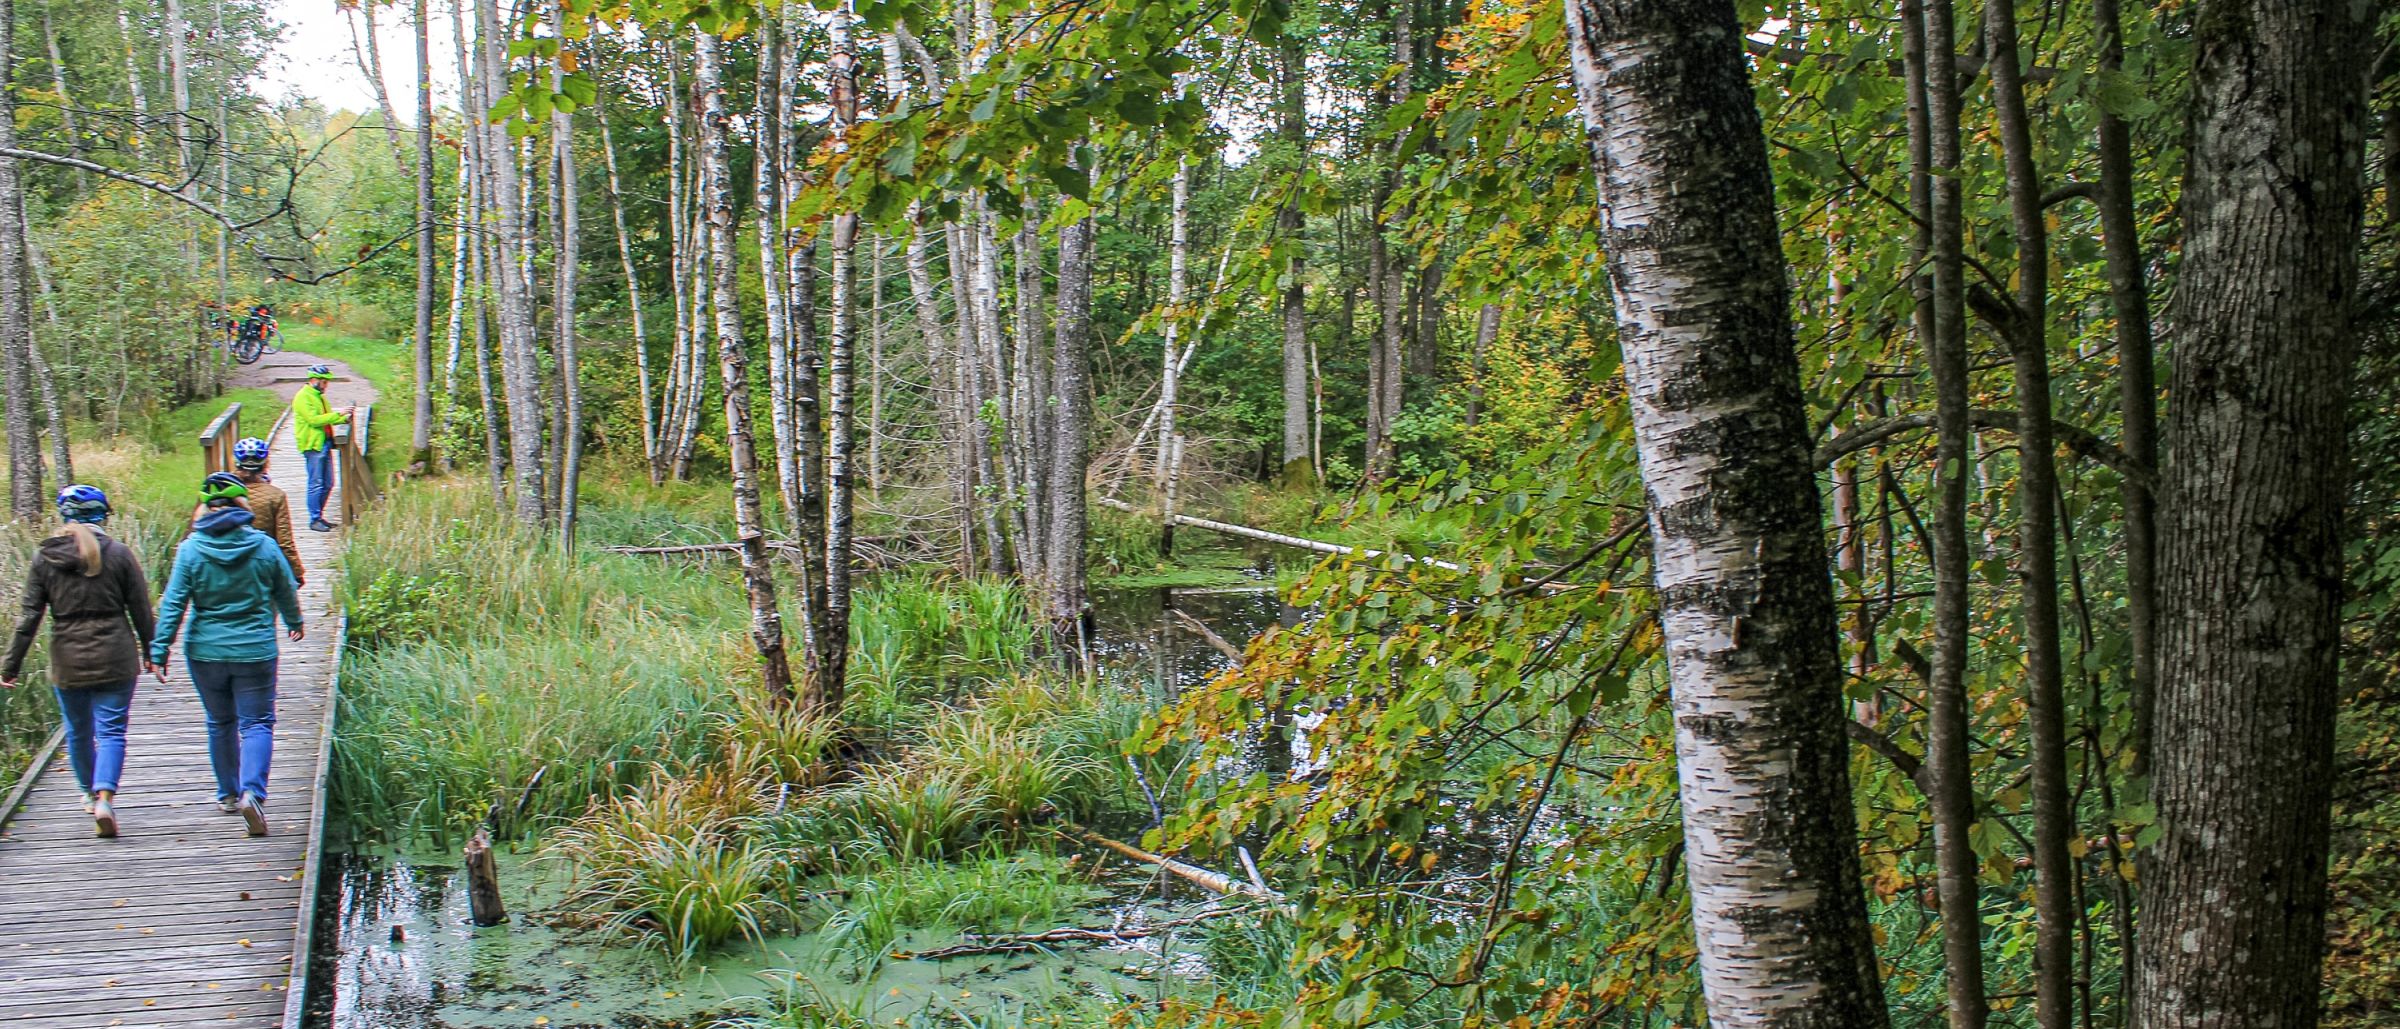 Moore, Wälder, Einsamkeit – all das erlebt man im Hinterland Litauens